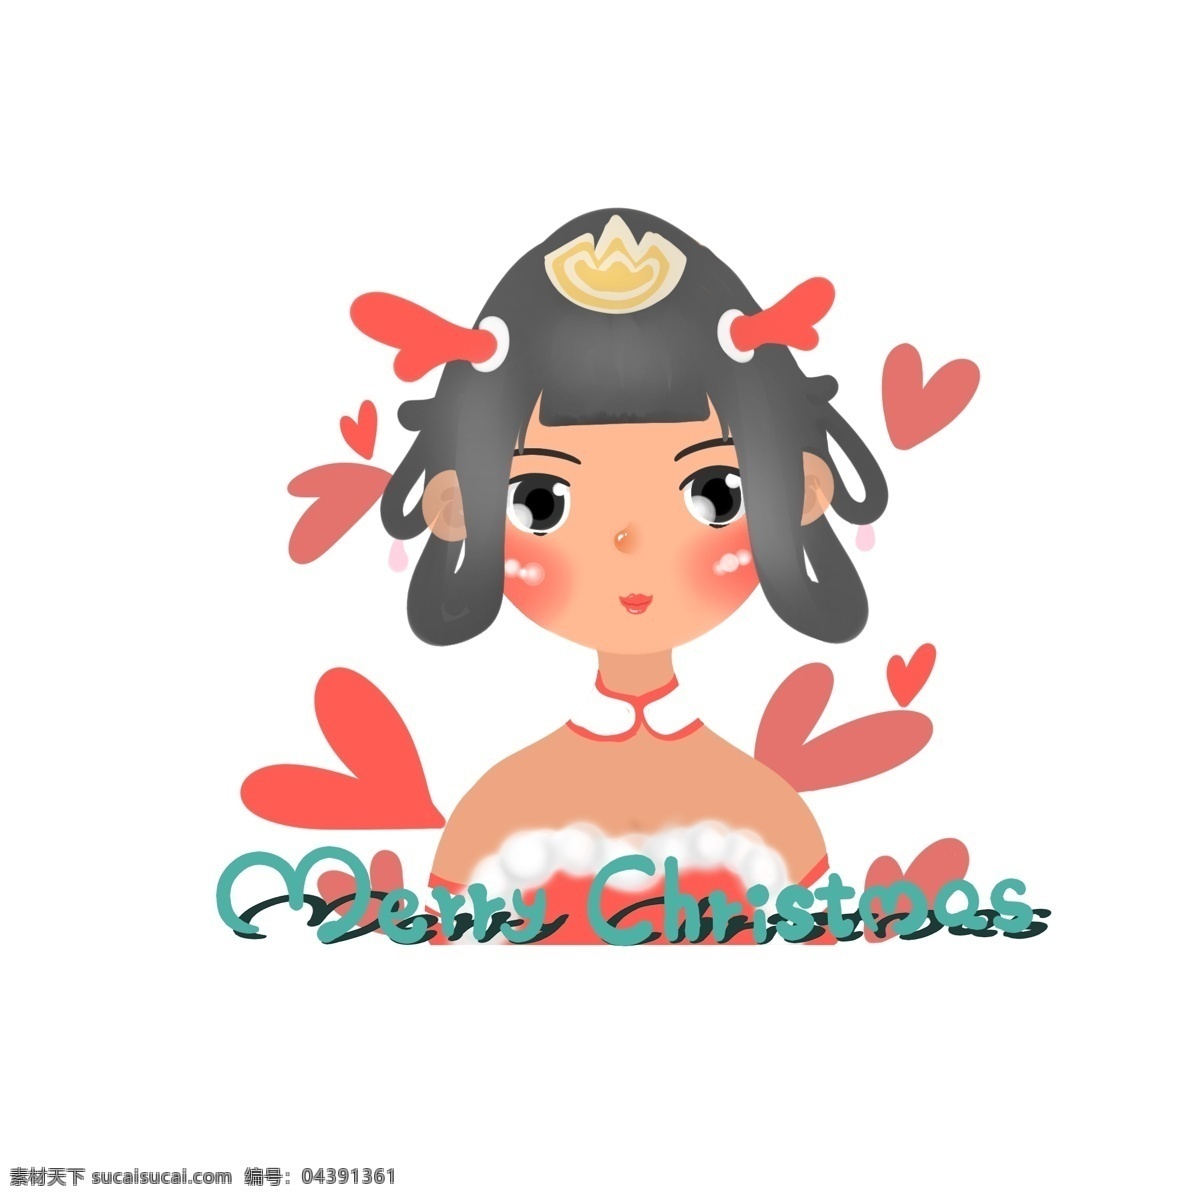 穿 性感 圣诞 服饰 俏丽 中国 风 女孩 圣诞节 红色 心形 卡通 人物 圣诞服装 圣诞裙 抹胸 中式 圣诞快乐 英文字母 手绘